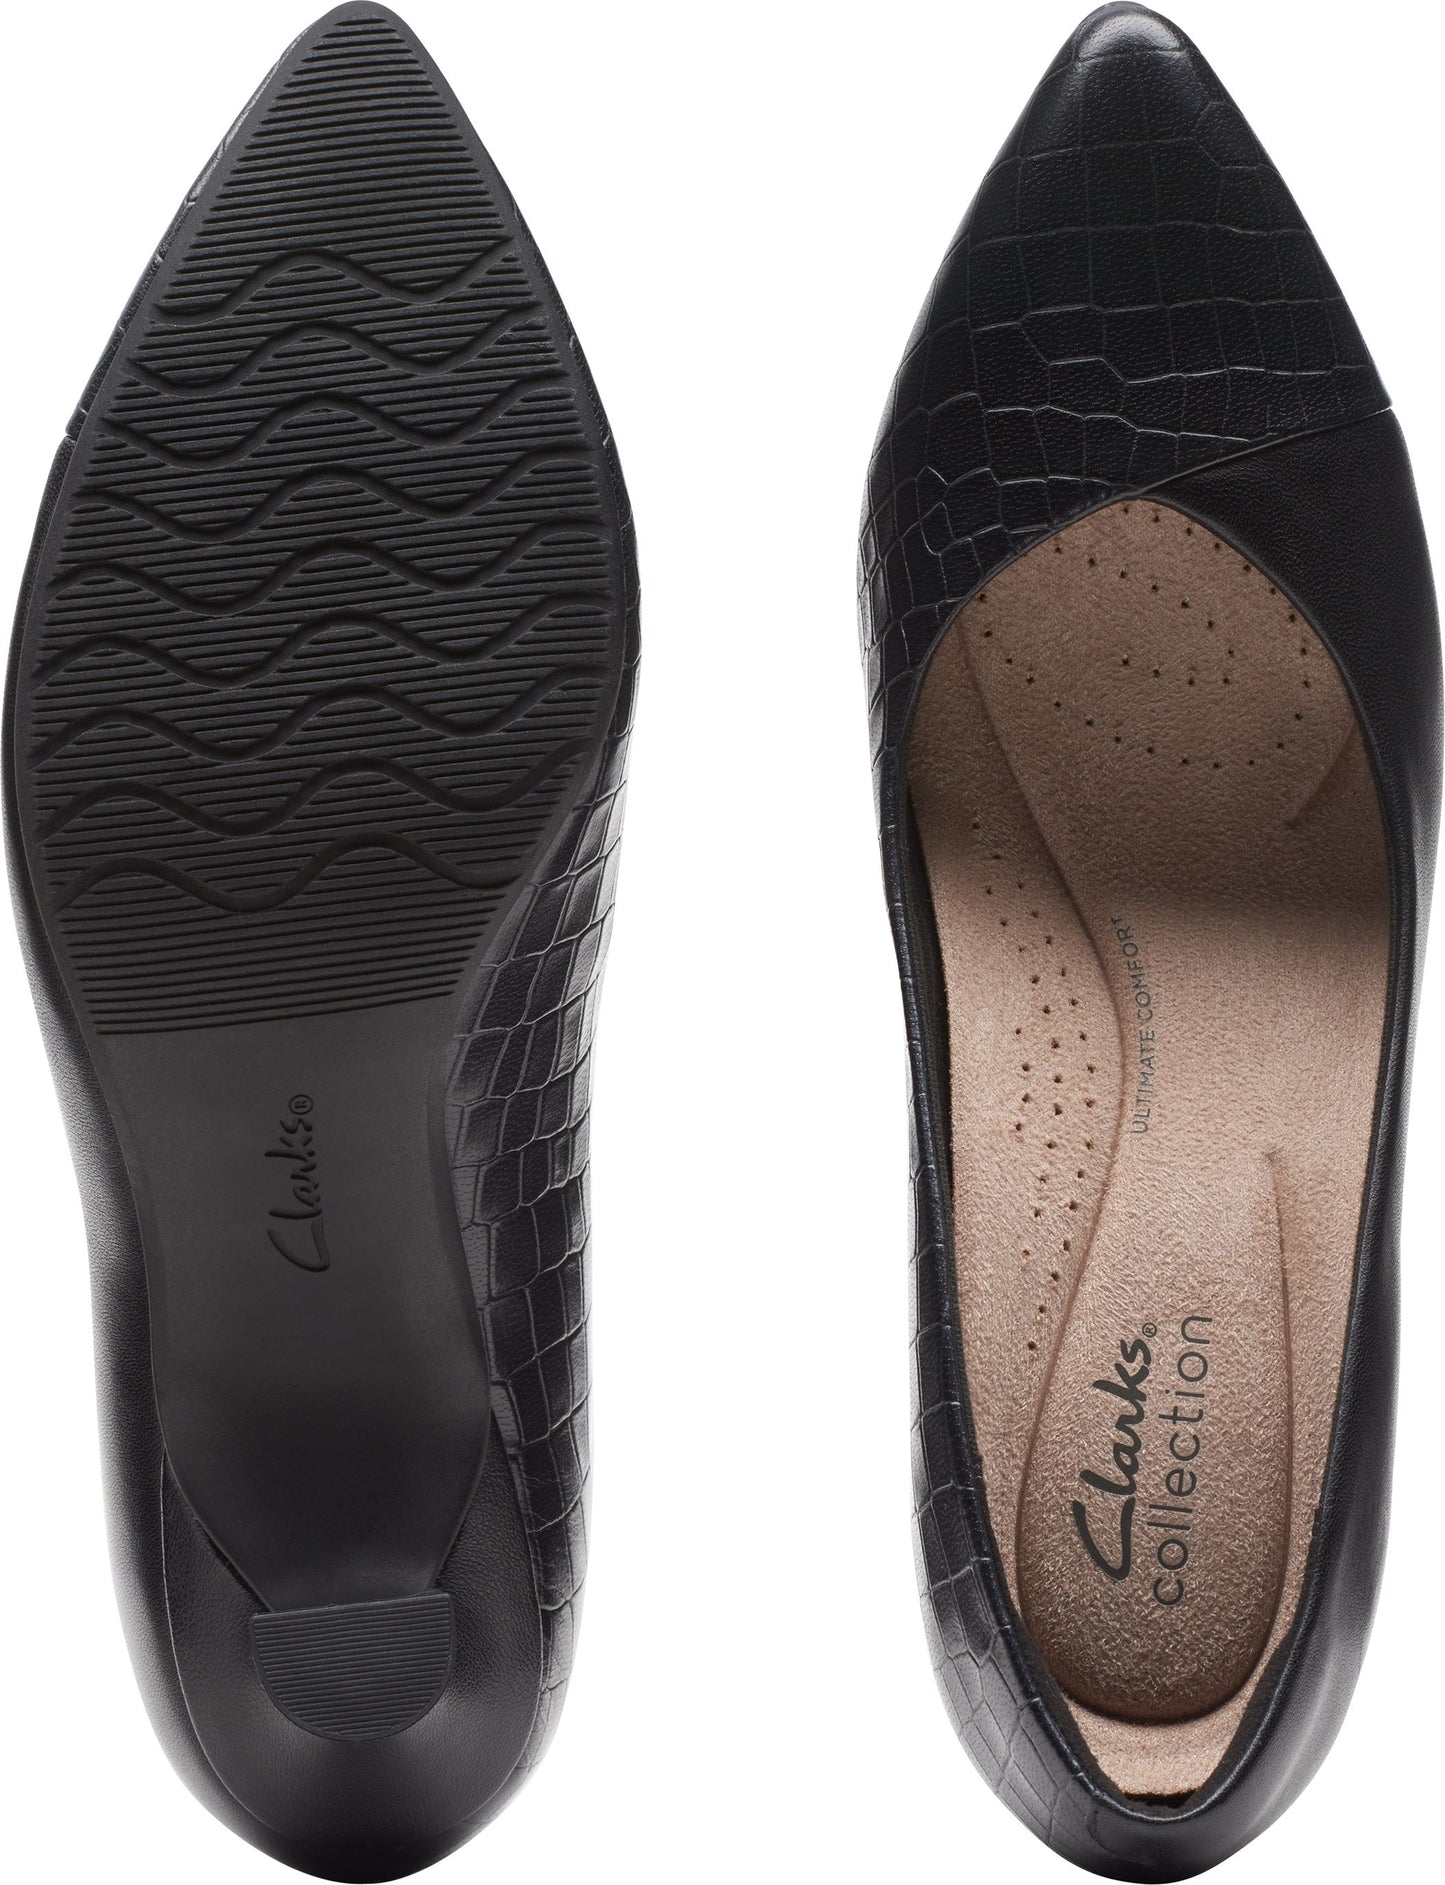 Clarks Shoes Kataleyna Rose Black Croc